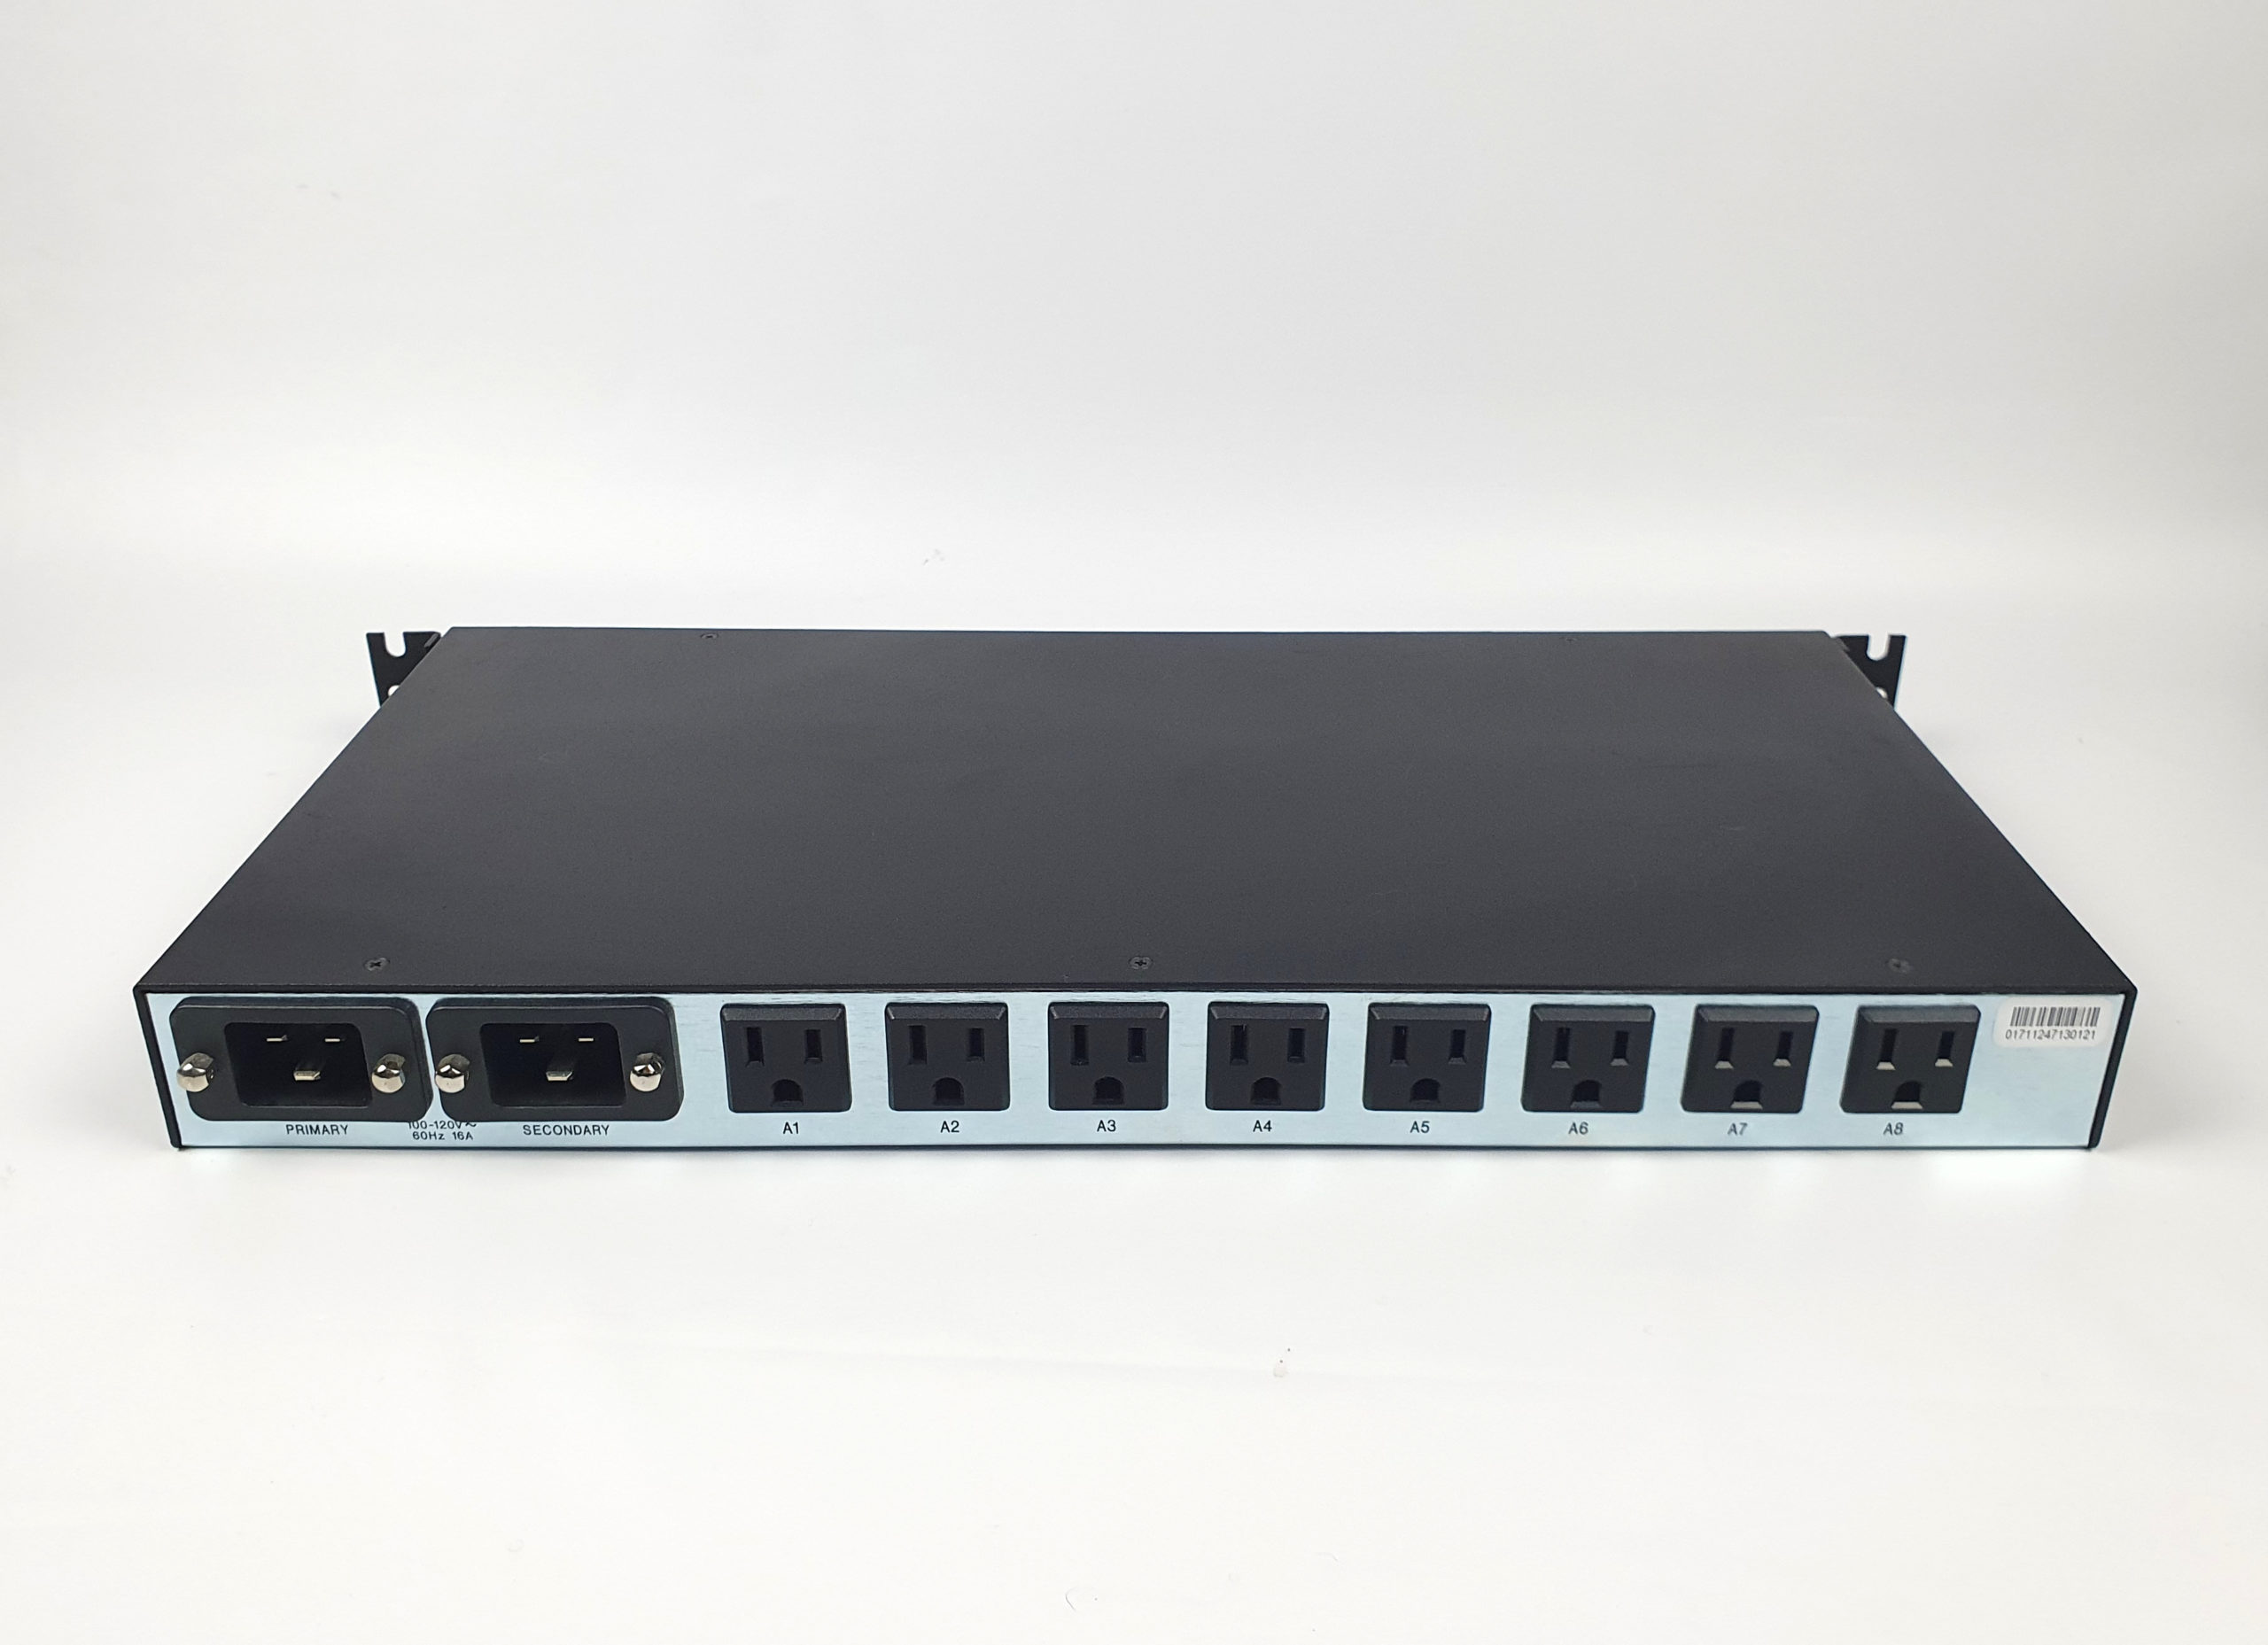 WTI | NPS-16HD20-1 Network Power Switch PDU Dual 20A 120V (16)5-15R